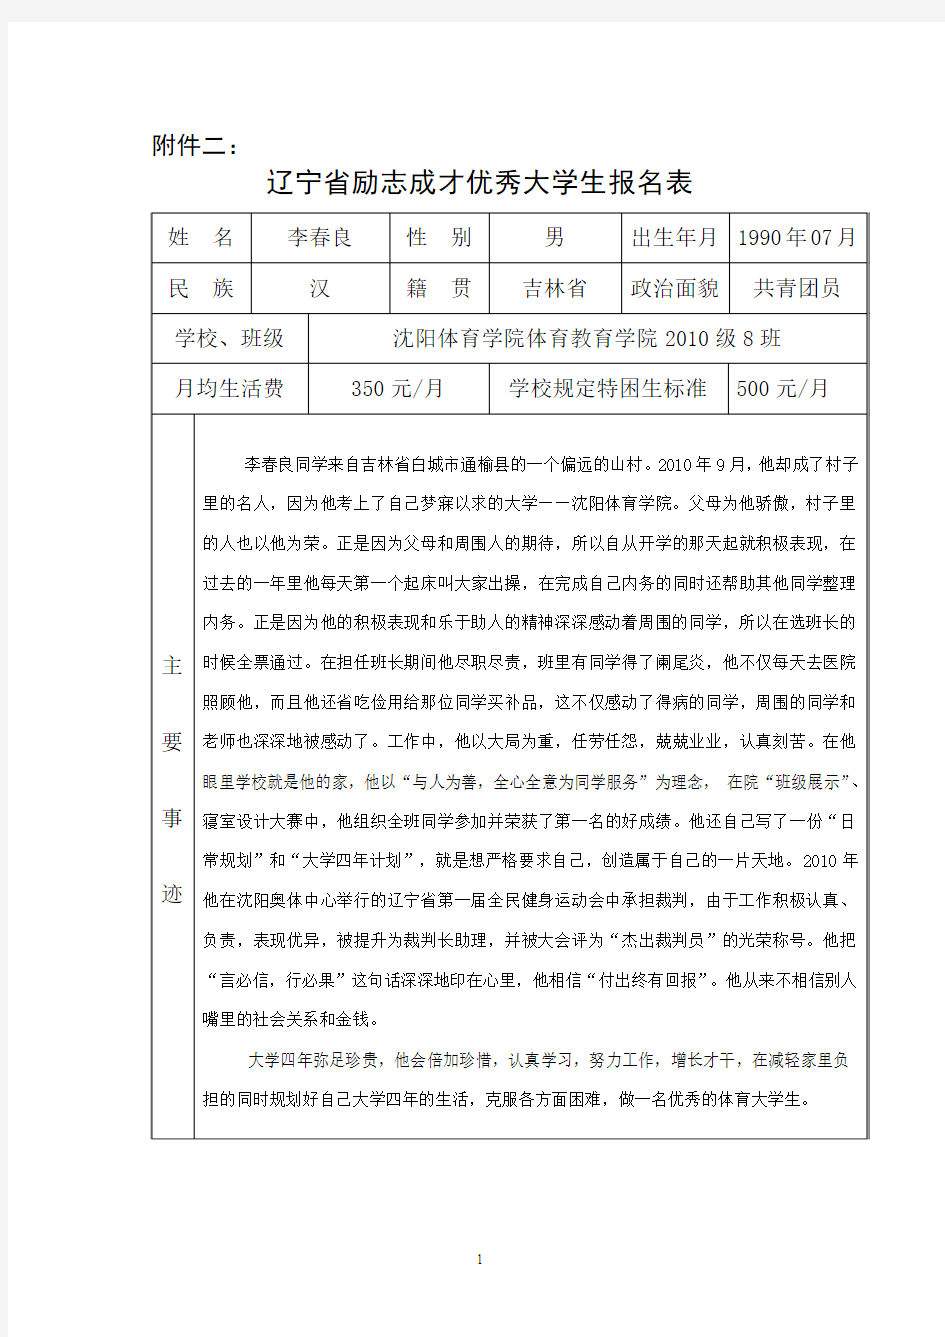 辽宁省励志成才优秀大学生报名表(1)(1)555555